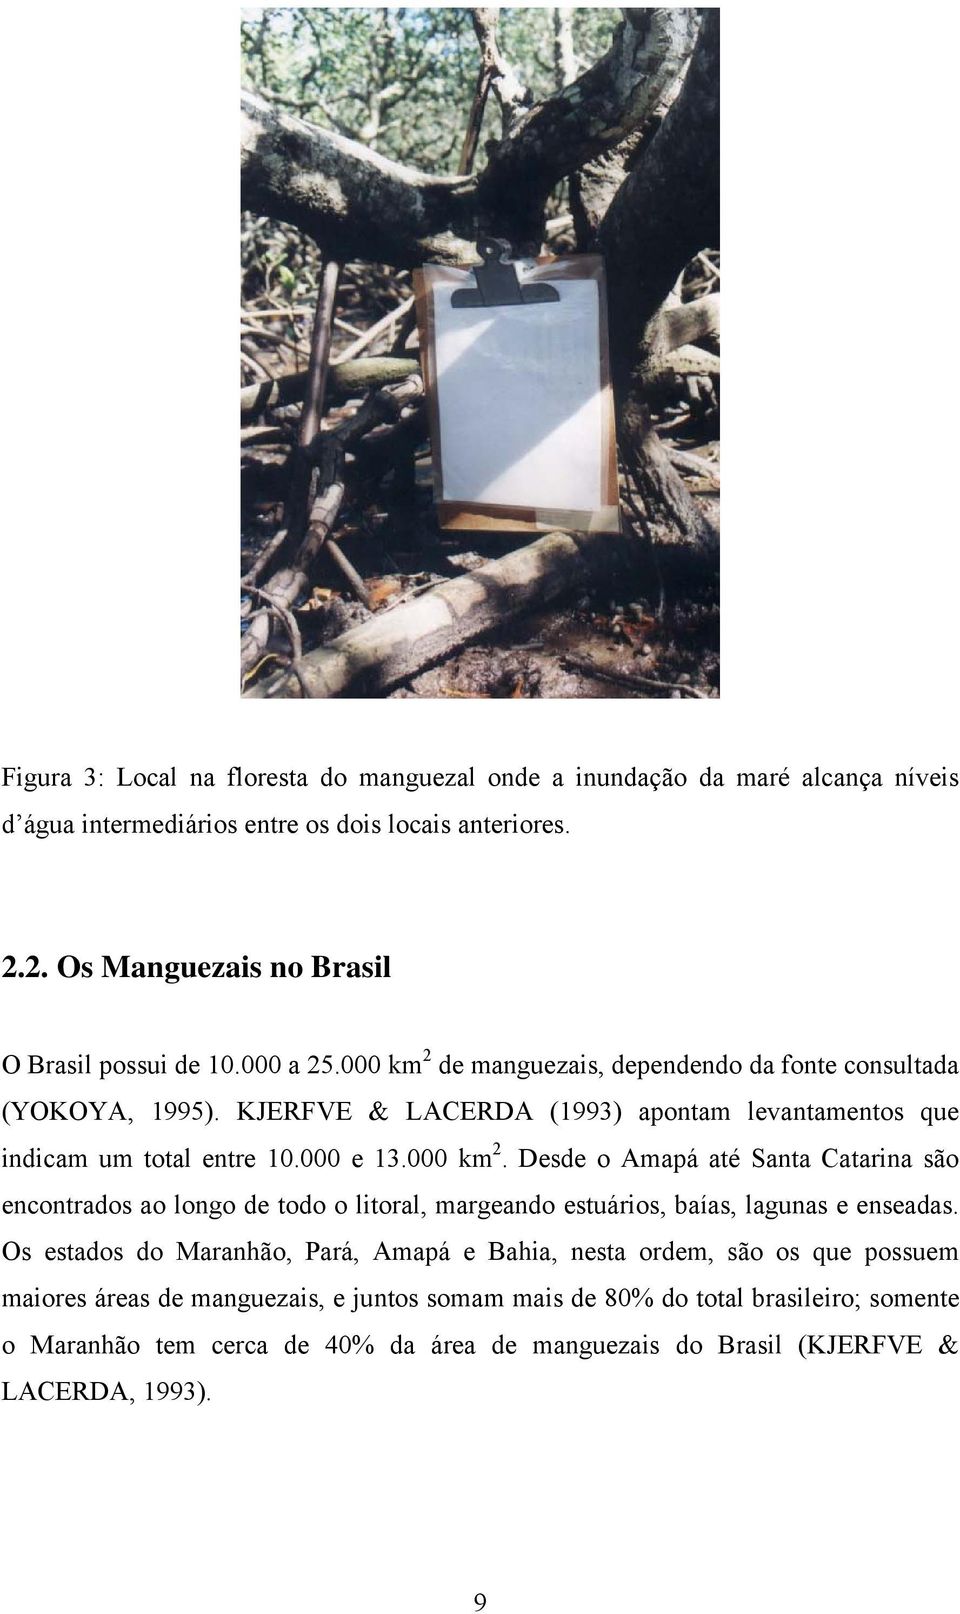 Os estados do Maranhão, Pará, Amapá e Bahia, nesta ordem, são os que possuem maiores áreas de manguezais, e juntos somam mais de 80% do total brasileiro; somente o Maranhão tem cerca